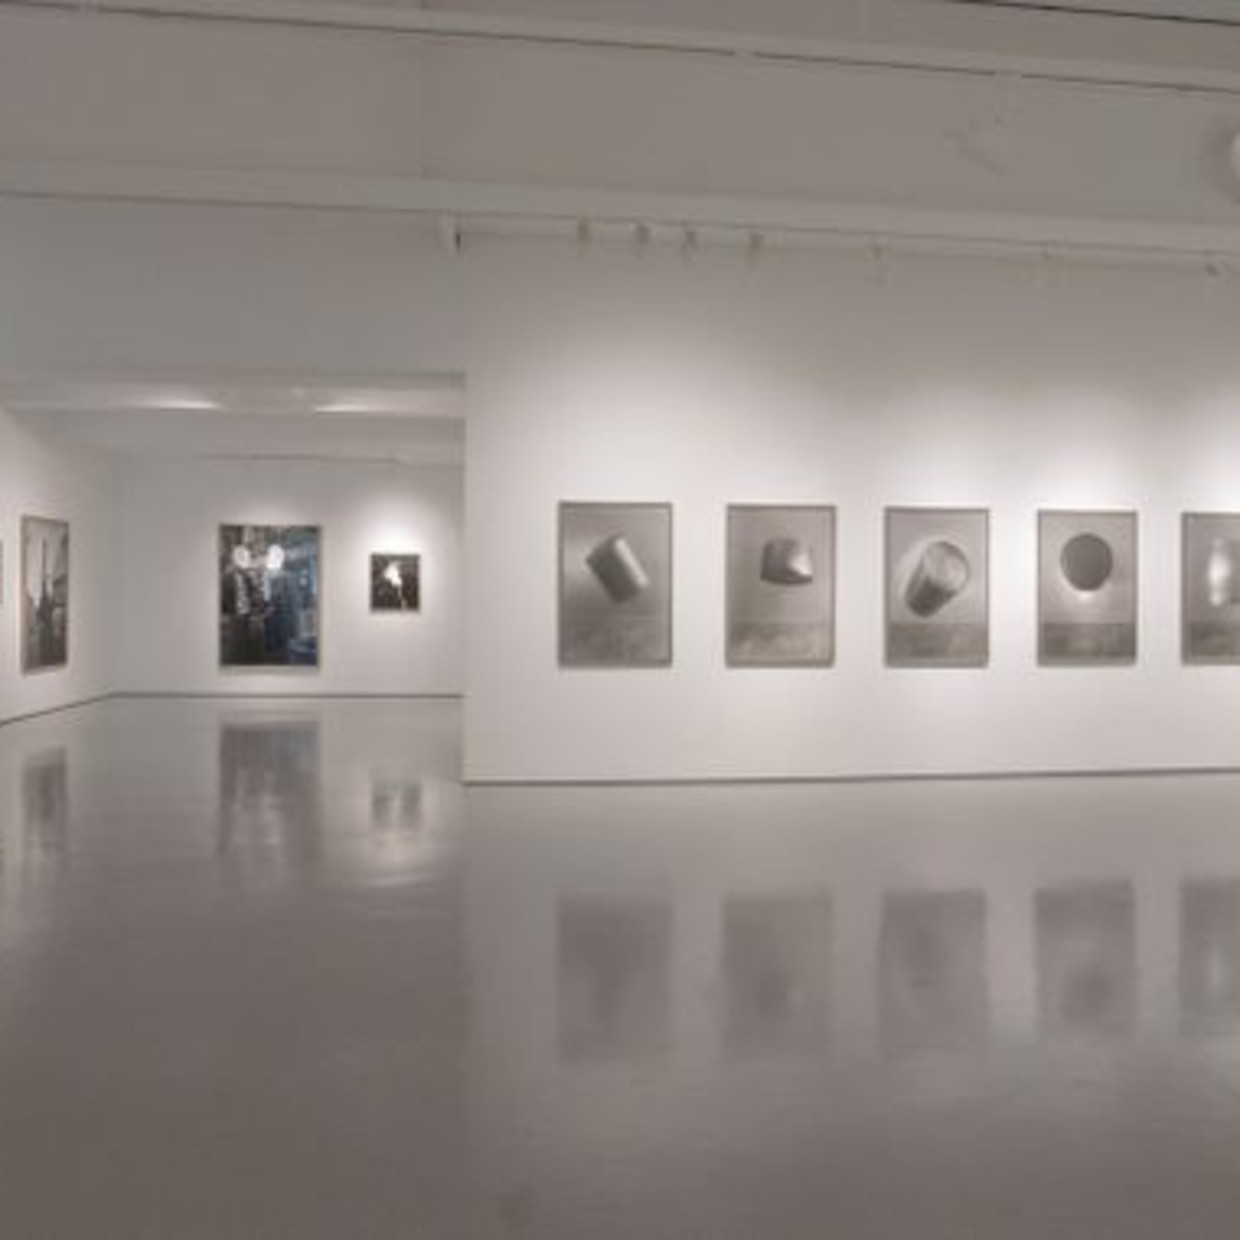 首尔摄影博物馆 MoPS是Ga-Hyeon文化基金会于2003年建立的韩国首家摄影博物馆。MoPS通过多种活动来实现其使命，包括展览策划，教育计划，出版，收集和研究早期，现代和当代的照片。它的存在是通过与重要的海外博物馆和基金会建立联系的同时，创造鼓励和启发摄影师的重要平台。 MoPS的目的是在遵循西方和国内摄影的历史和趋势下建立一个重要的收藏集。馆藏的很大一部分是来自大约1880年代至1940年代的韩国早期摄影作品，也是馆藏的最早期的作品。通过展览，出版物和专题讨论会等不同的形式，定期与公众和专业人士分享。 首尔摄影博物馆于2018集美·阿尔勒国际摄影季时在韩国影汇单元展出了两个展览。 www.photomuseum.or.kr